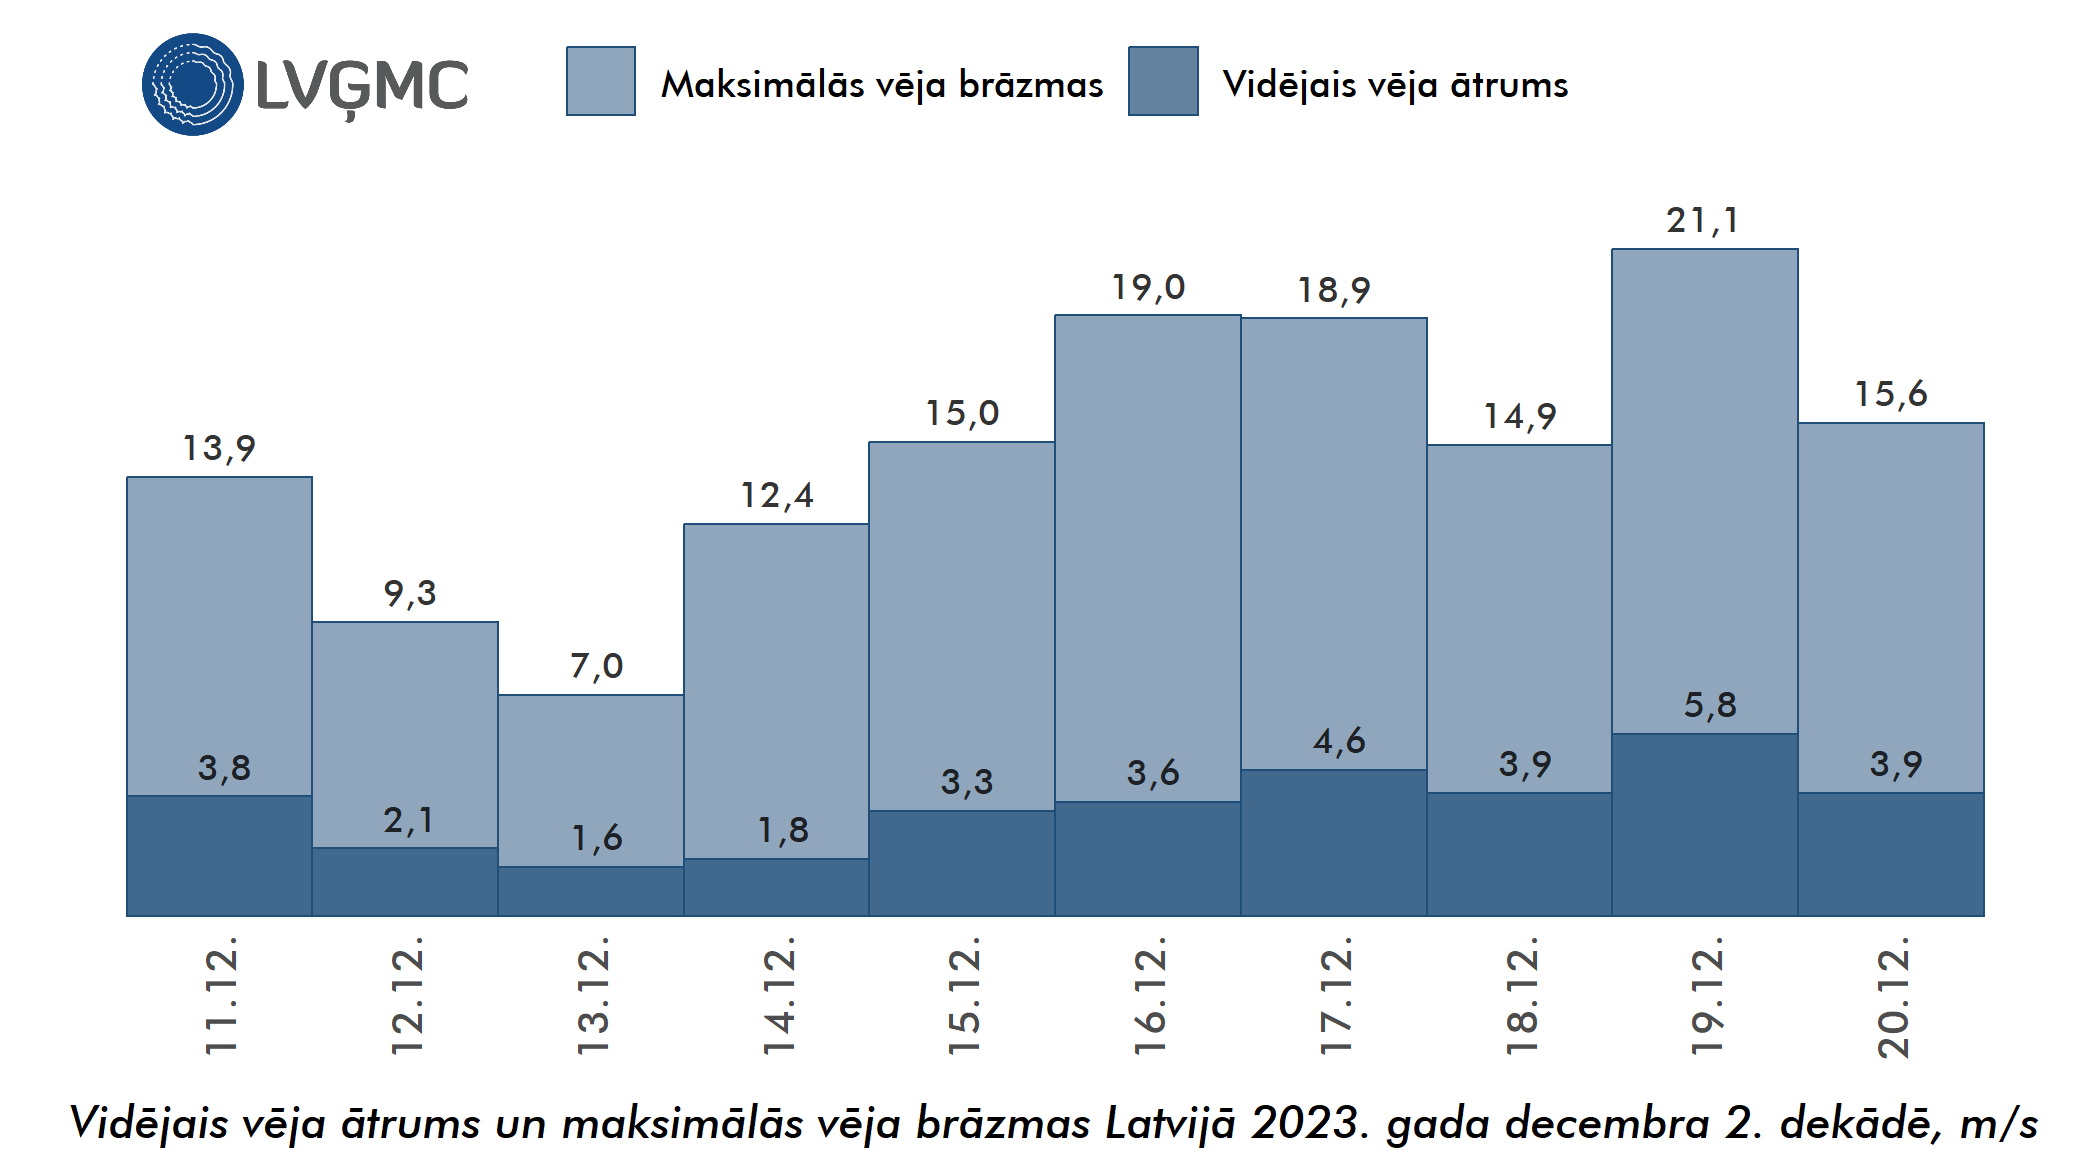 Vidējais un maksimālais vēja ātrums Lavijā 2023. gada decembra 2. dekādē, m/s